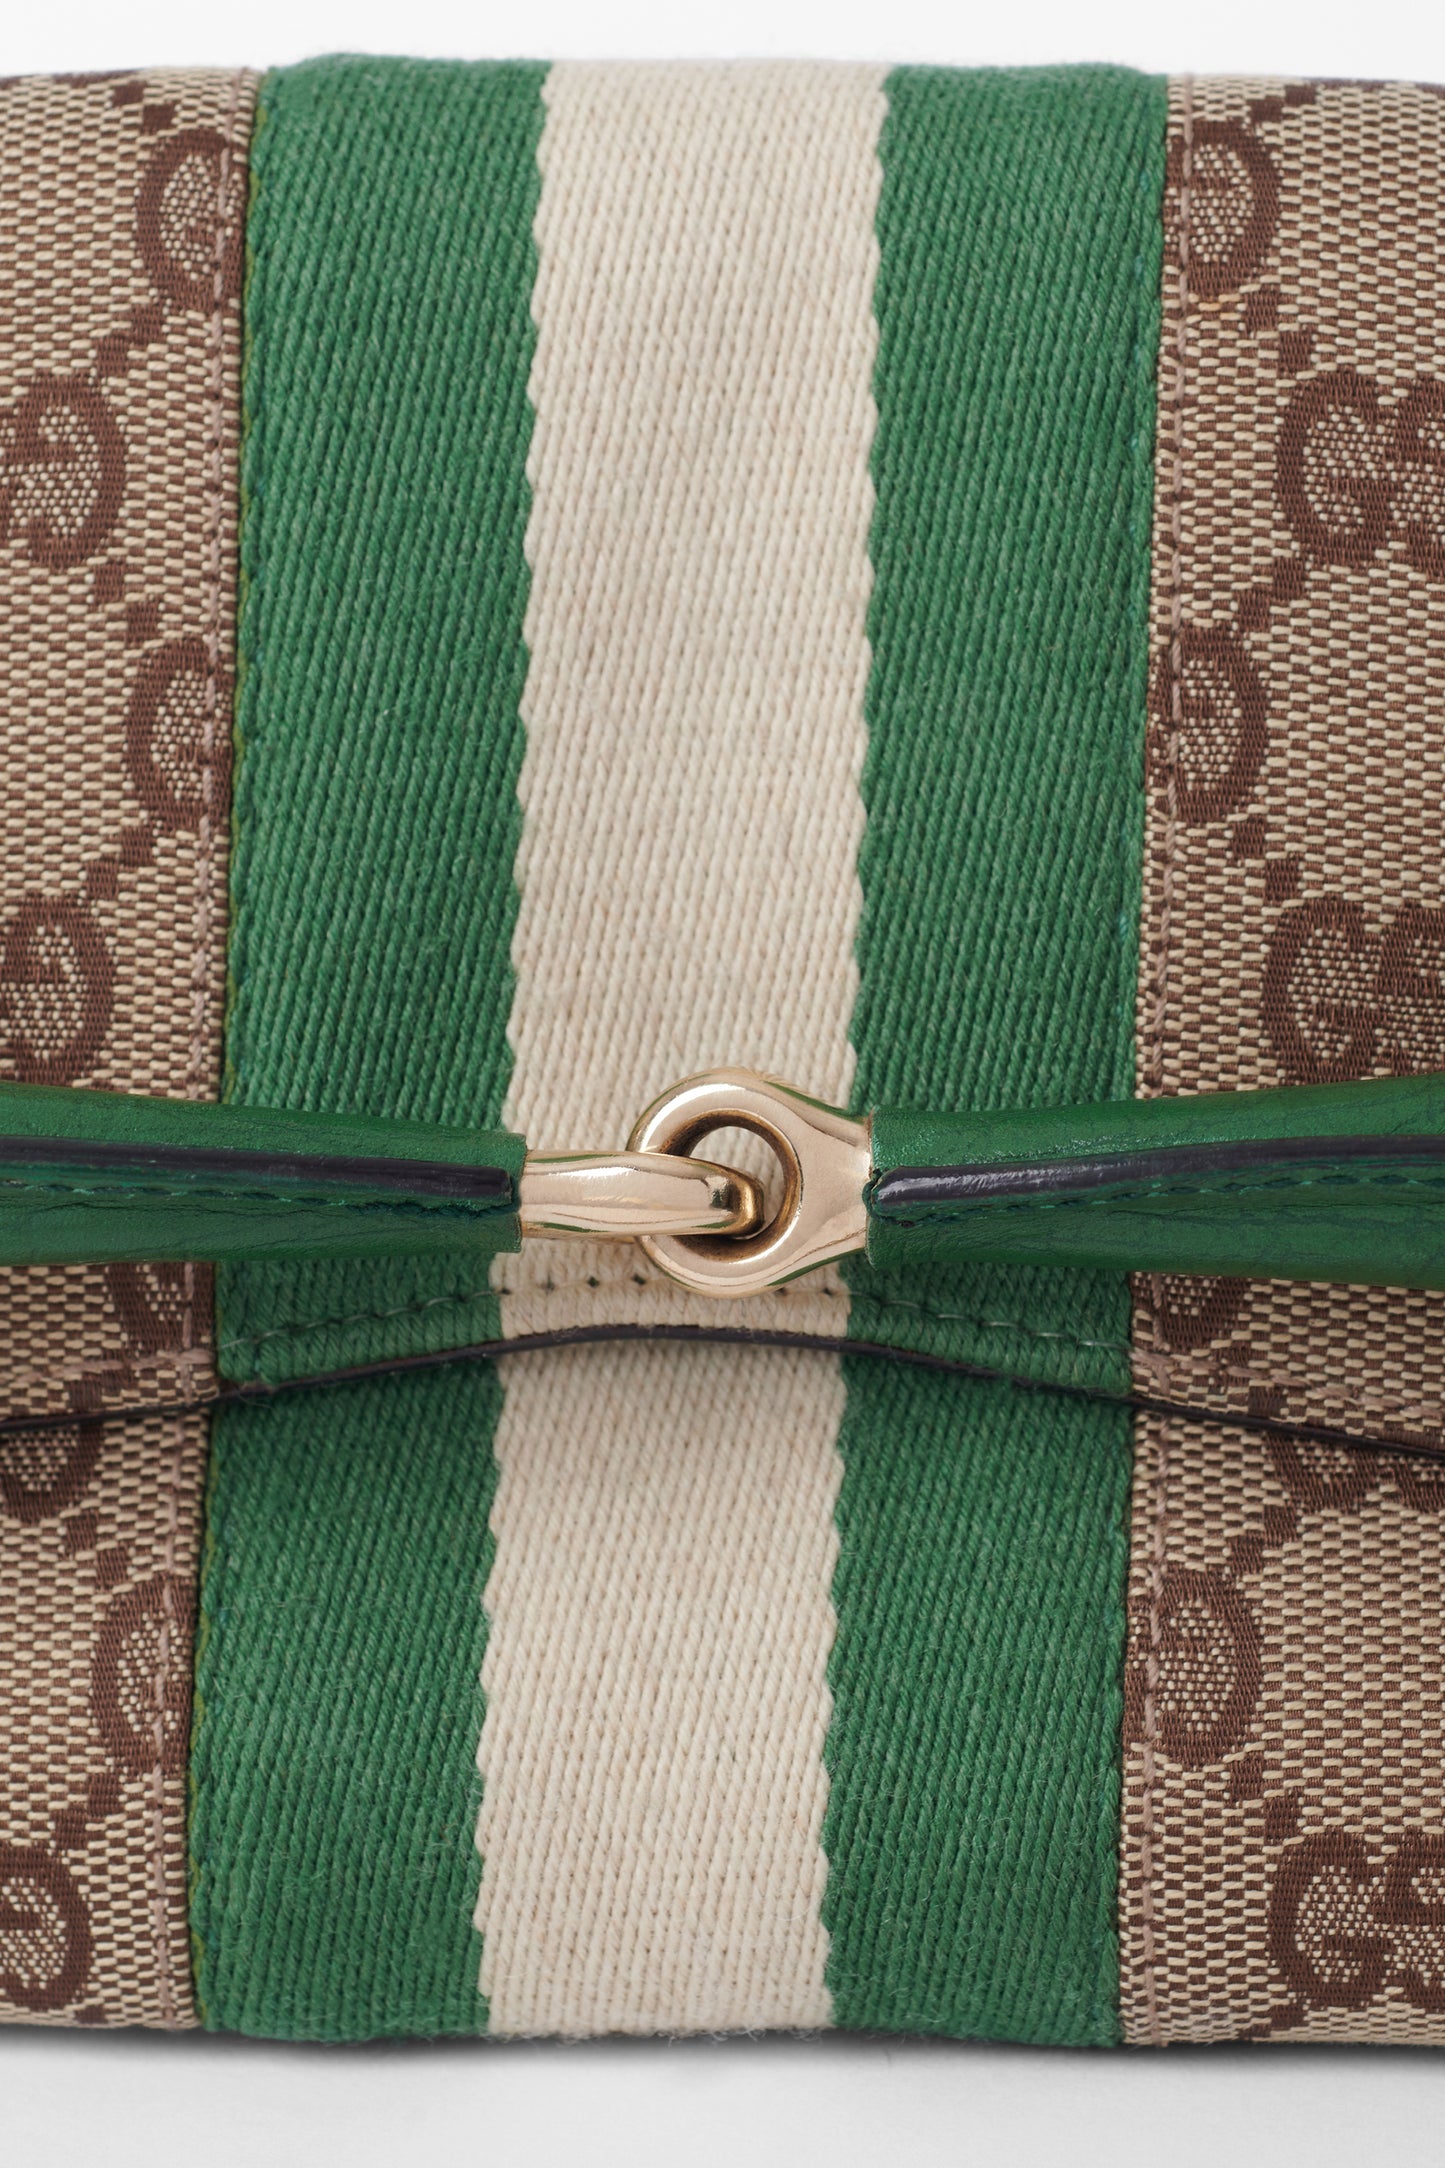 Vintage S/S 2003 Green Horsebit 1955 Clutch Bag